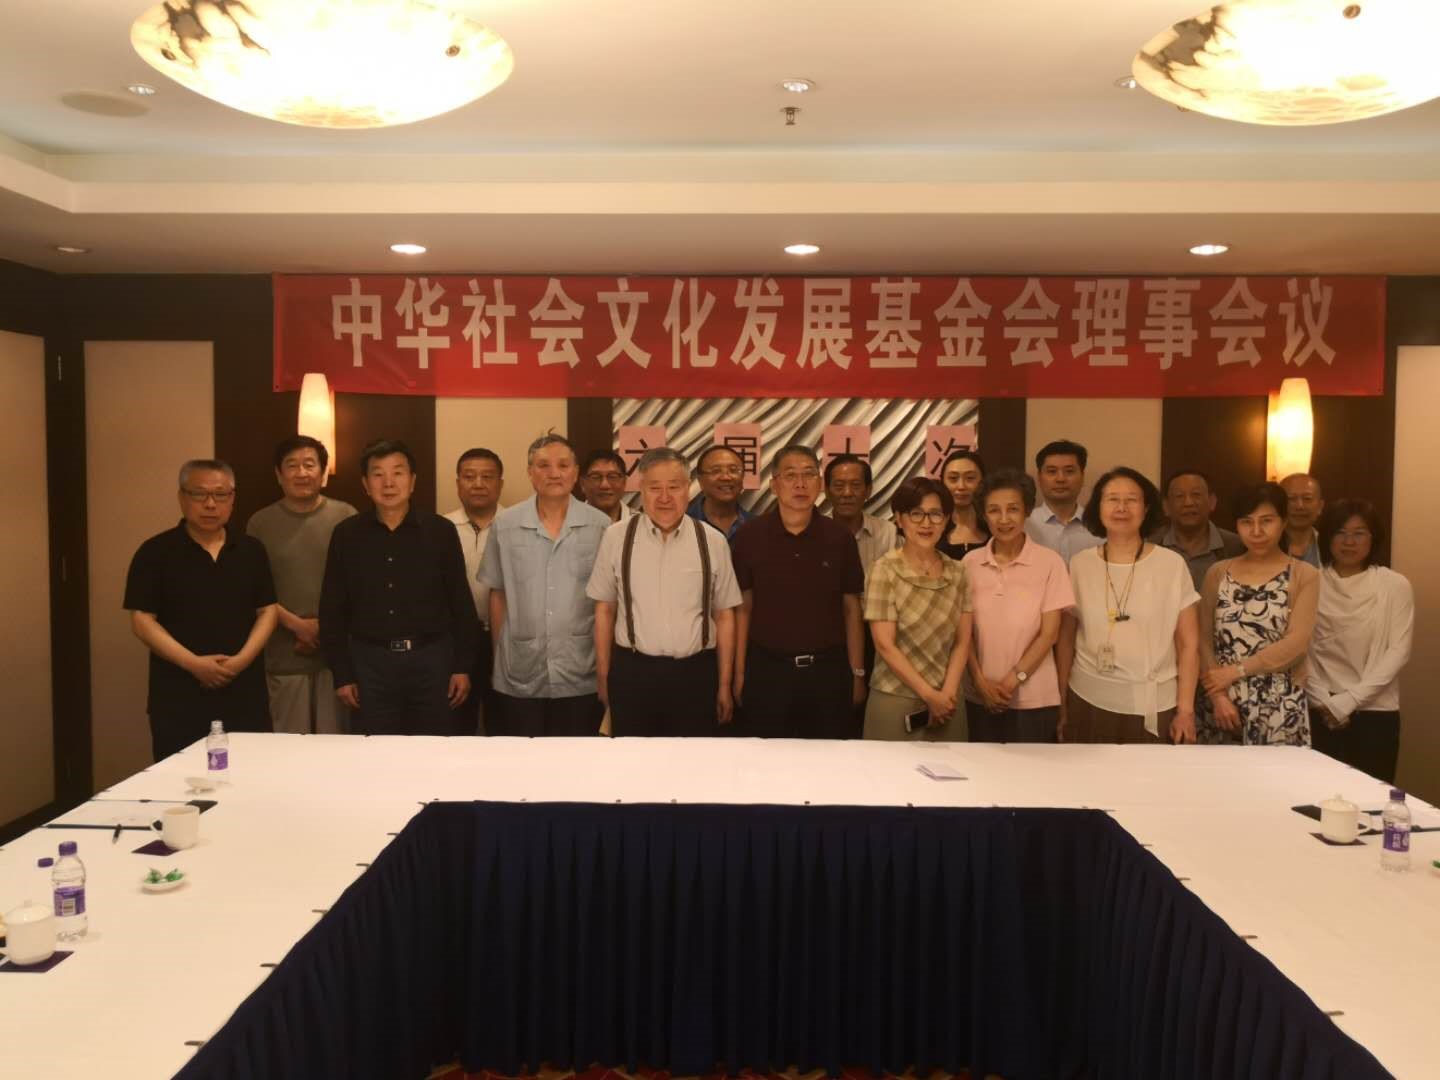 中华社会文化发展基金会第六届第十次理事会于2019年06月11日上午在北京西单美爵酒店锦绣阁会议室。